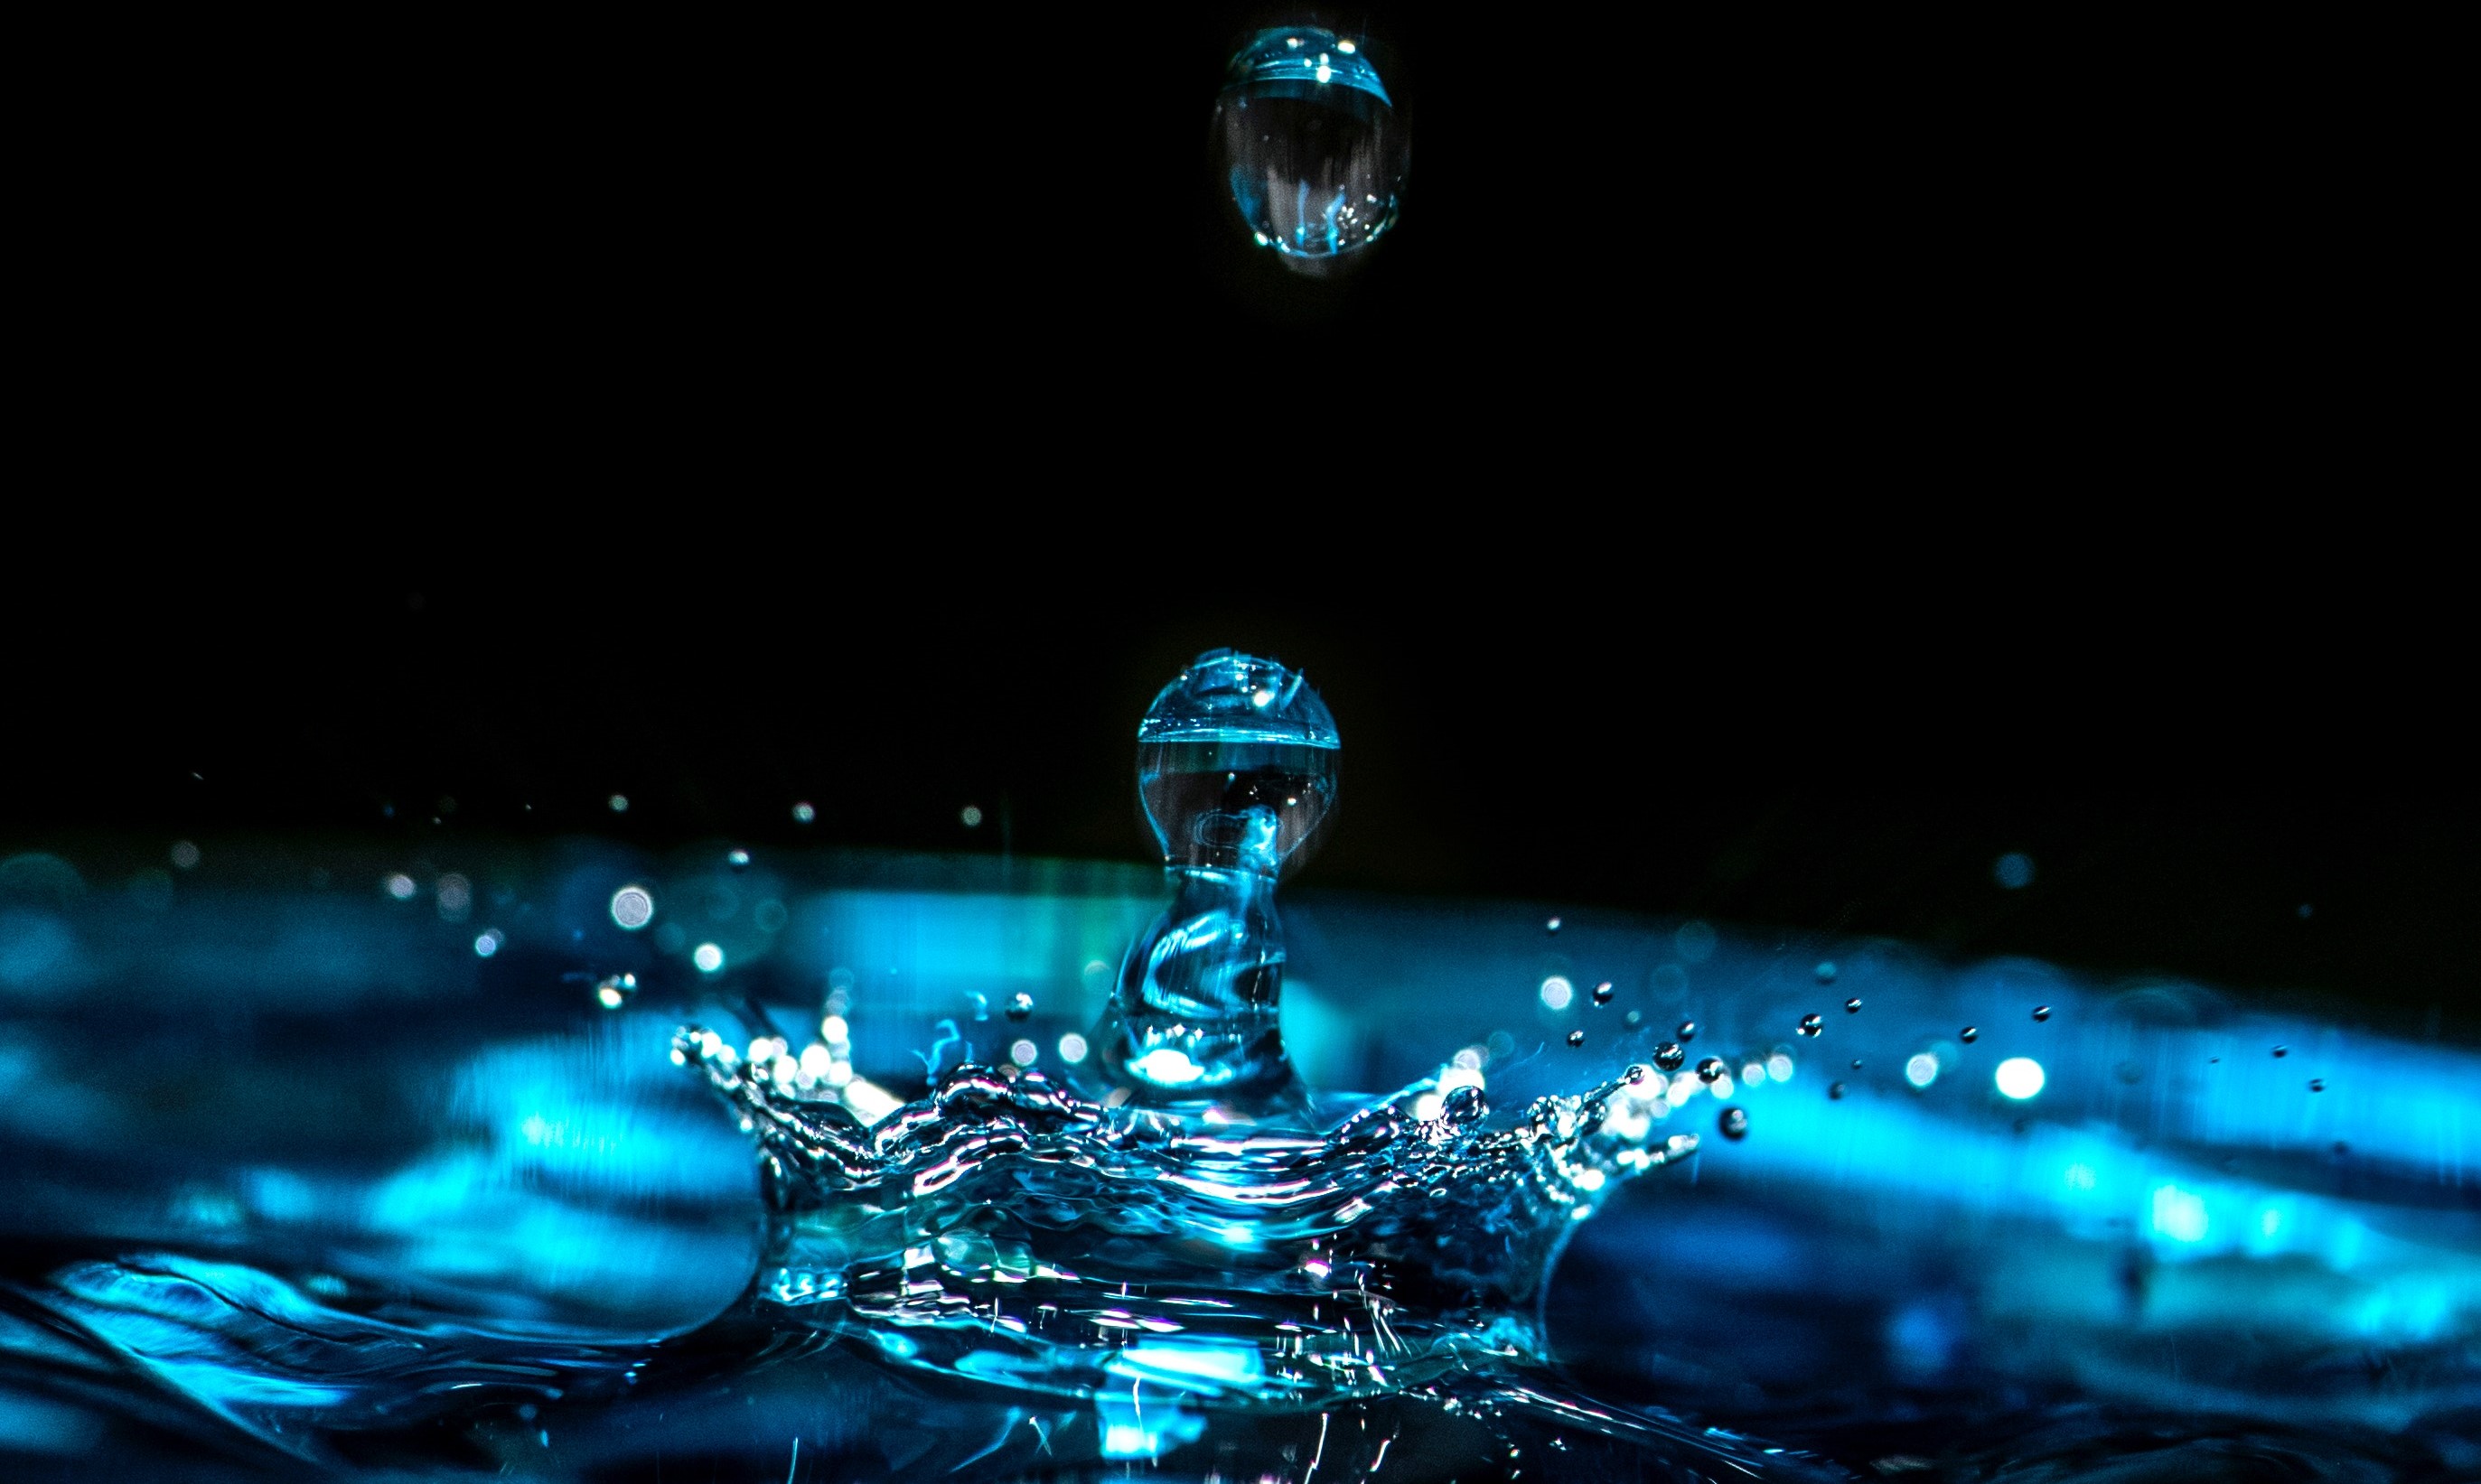 Water Droplet splashing